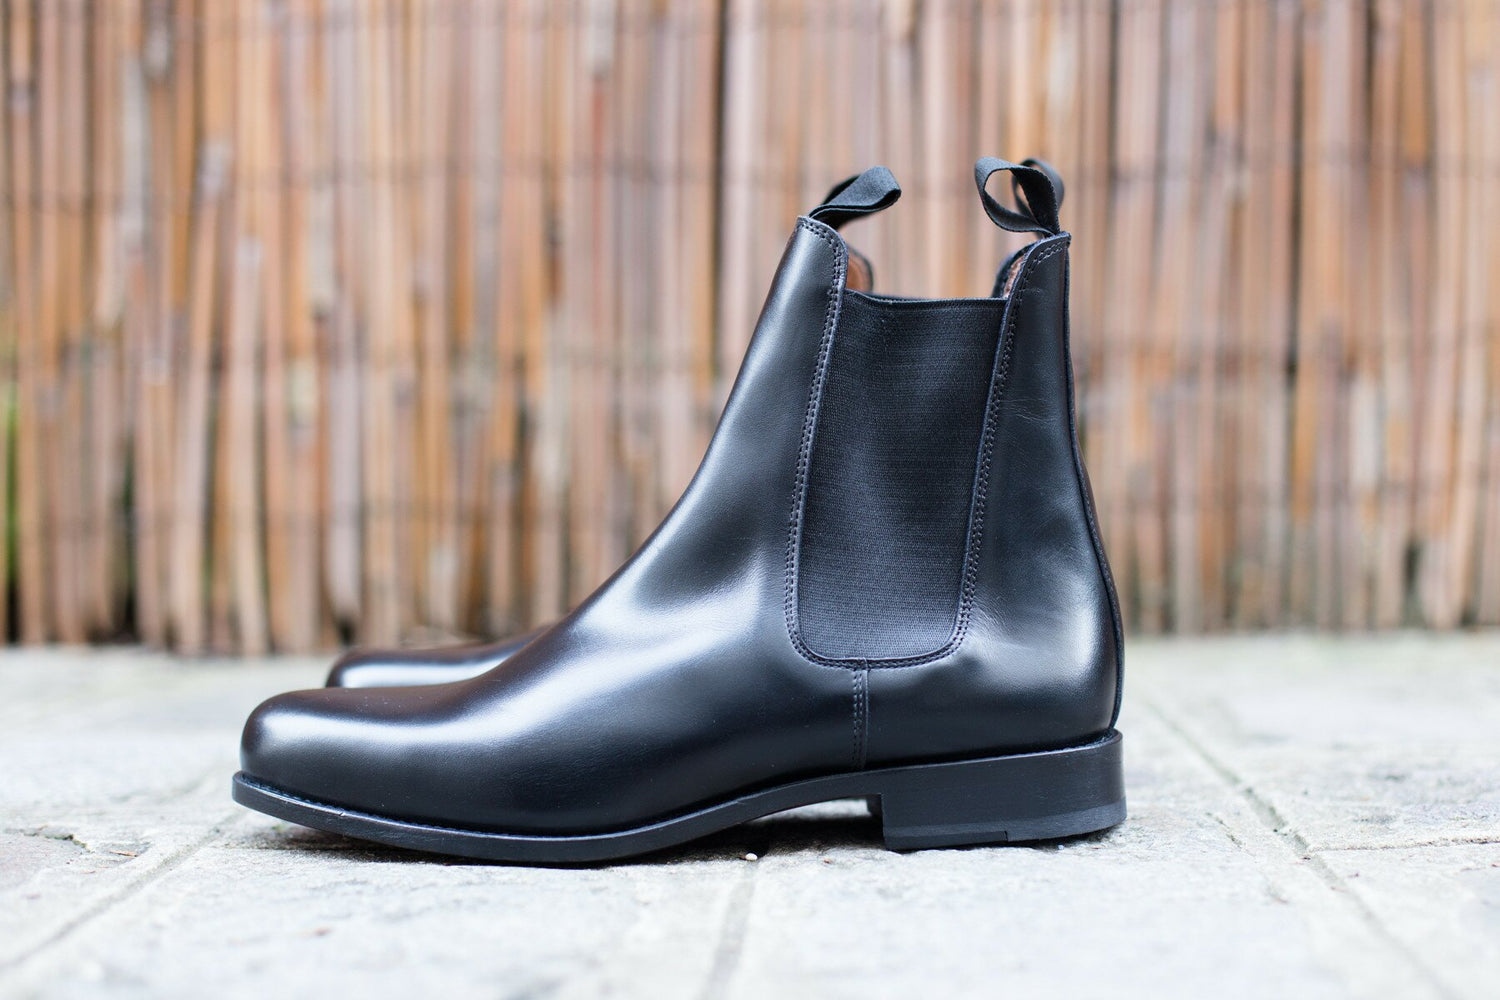 BRITISH SHOES - Boots en cuir noir et semelle cuir